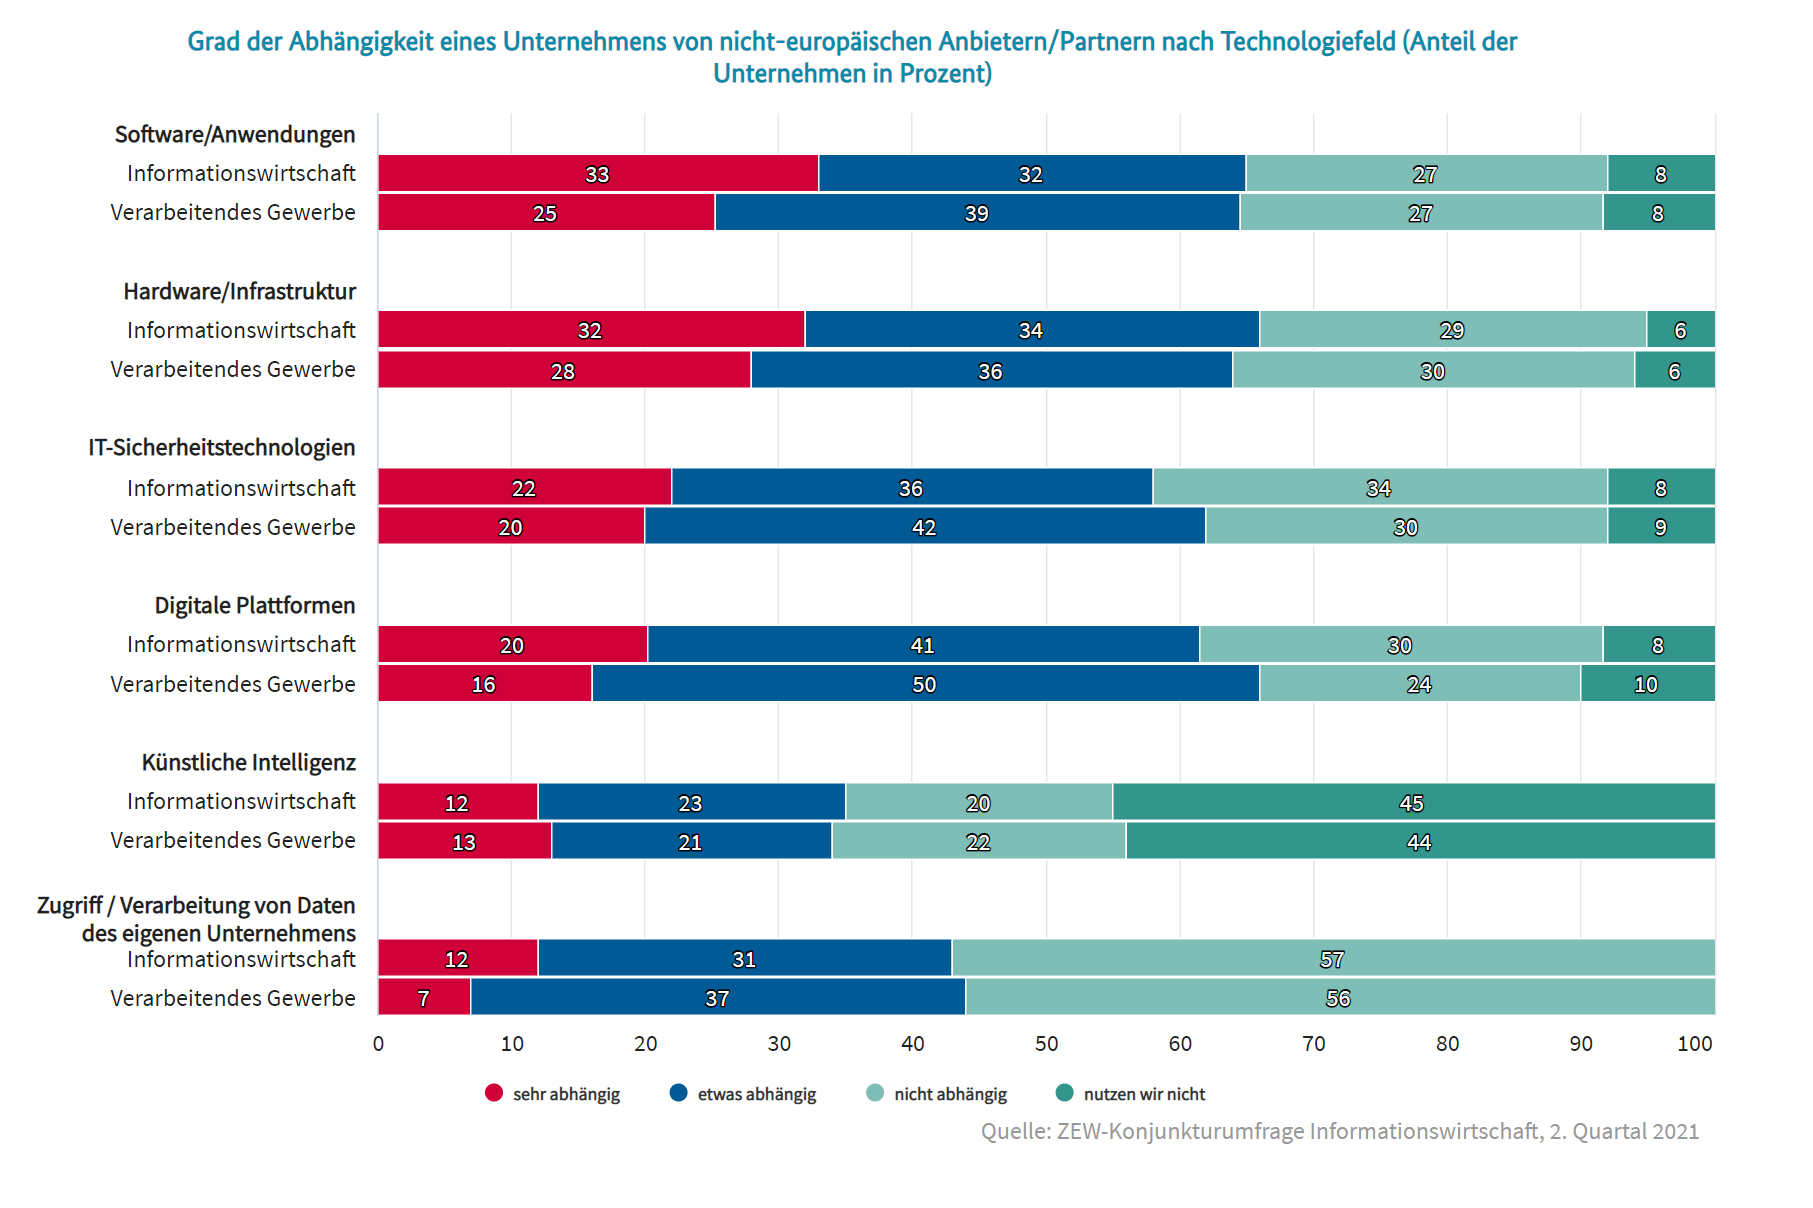 Grad der Abhängigkeit eines Unternehmens von nicht-europäischen Anbietern/Partnern nach Technologiefeld (Anteil der Unternehmen in Prozent)